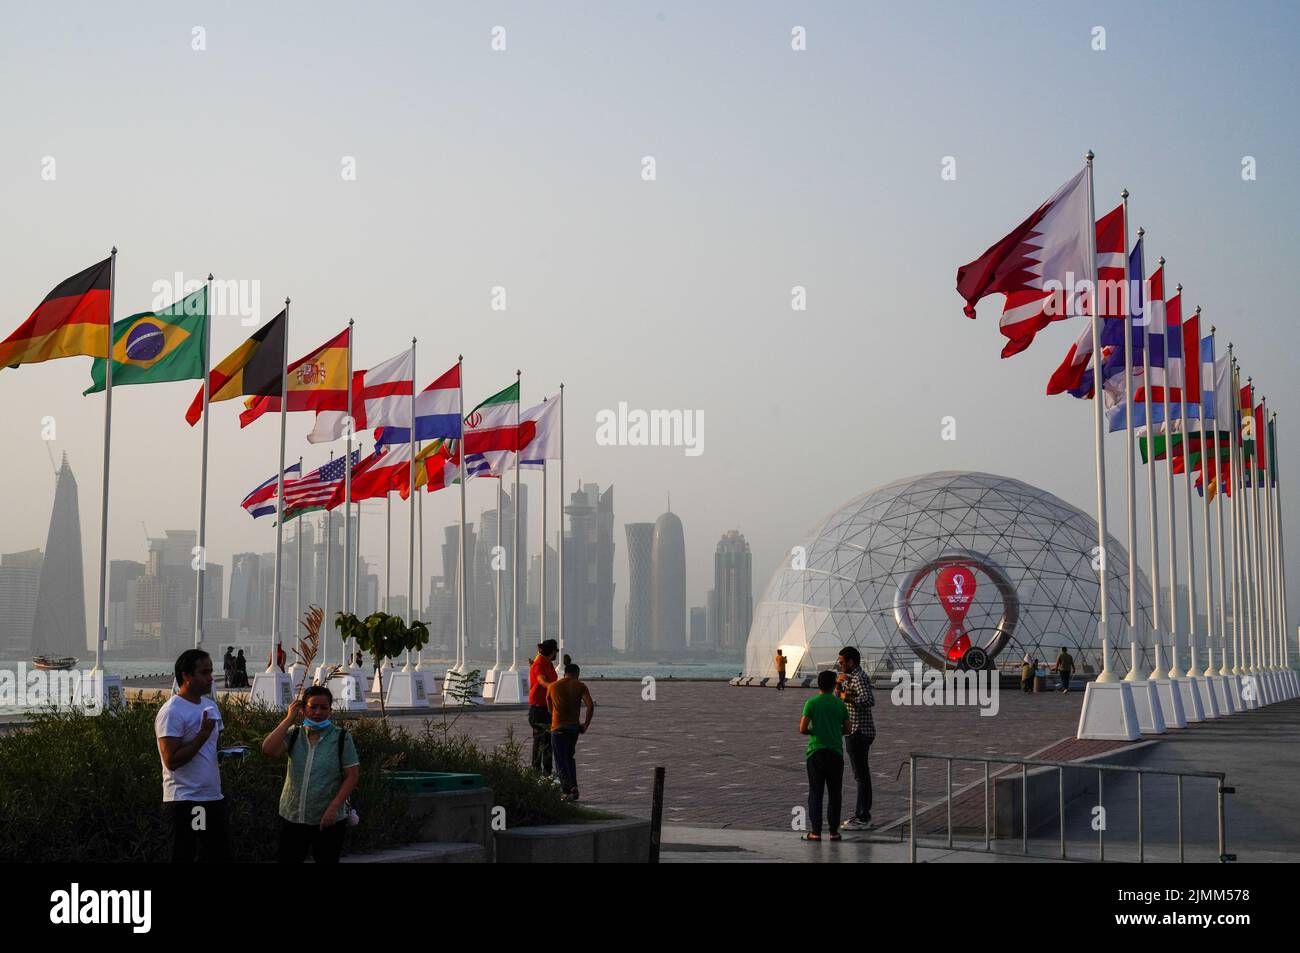 Il conto alla rovescia per la Coppa del mondo FIFA Qatar 2022 e le bandiere delle squadre nazionali partecipanti, a Doha, in Qatar Foto Stock